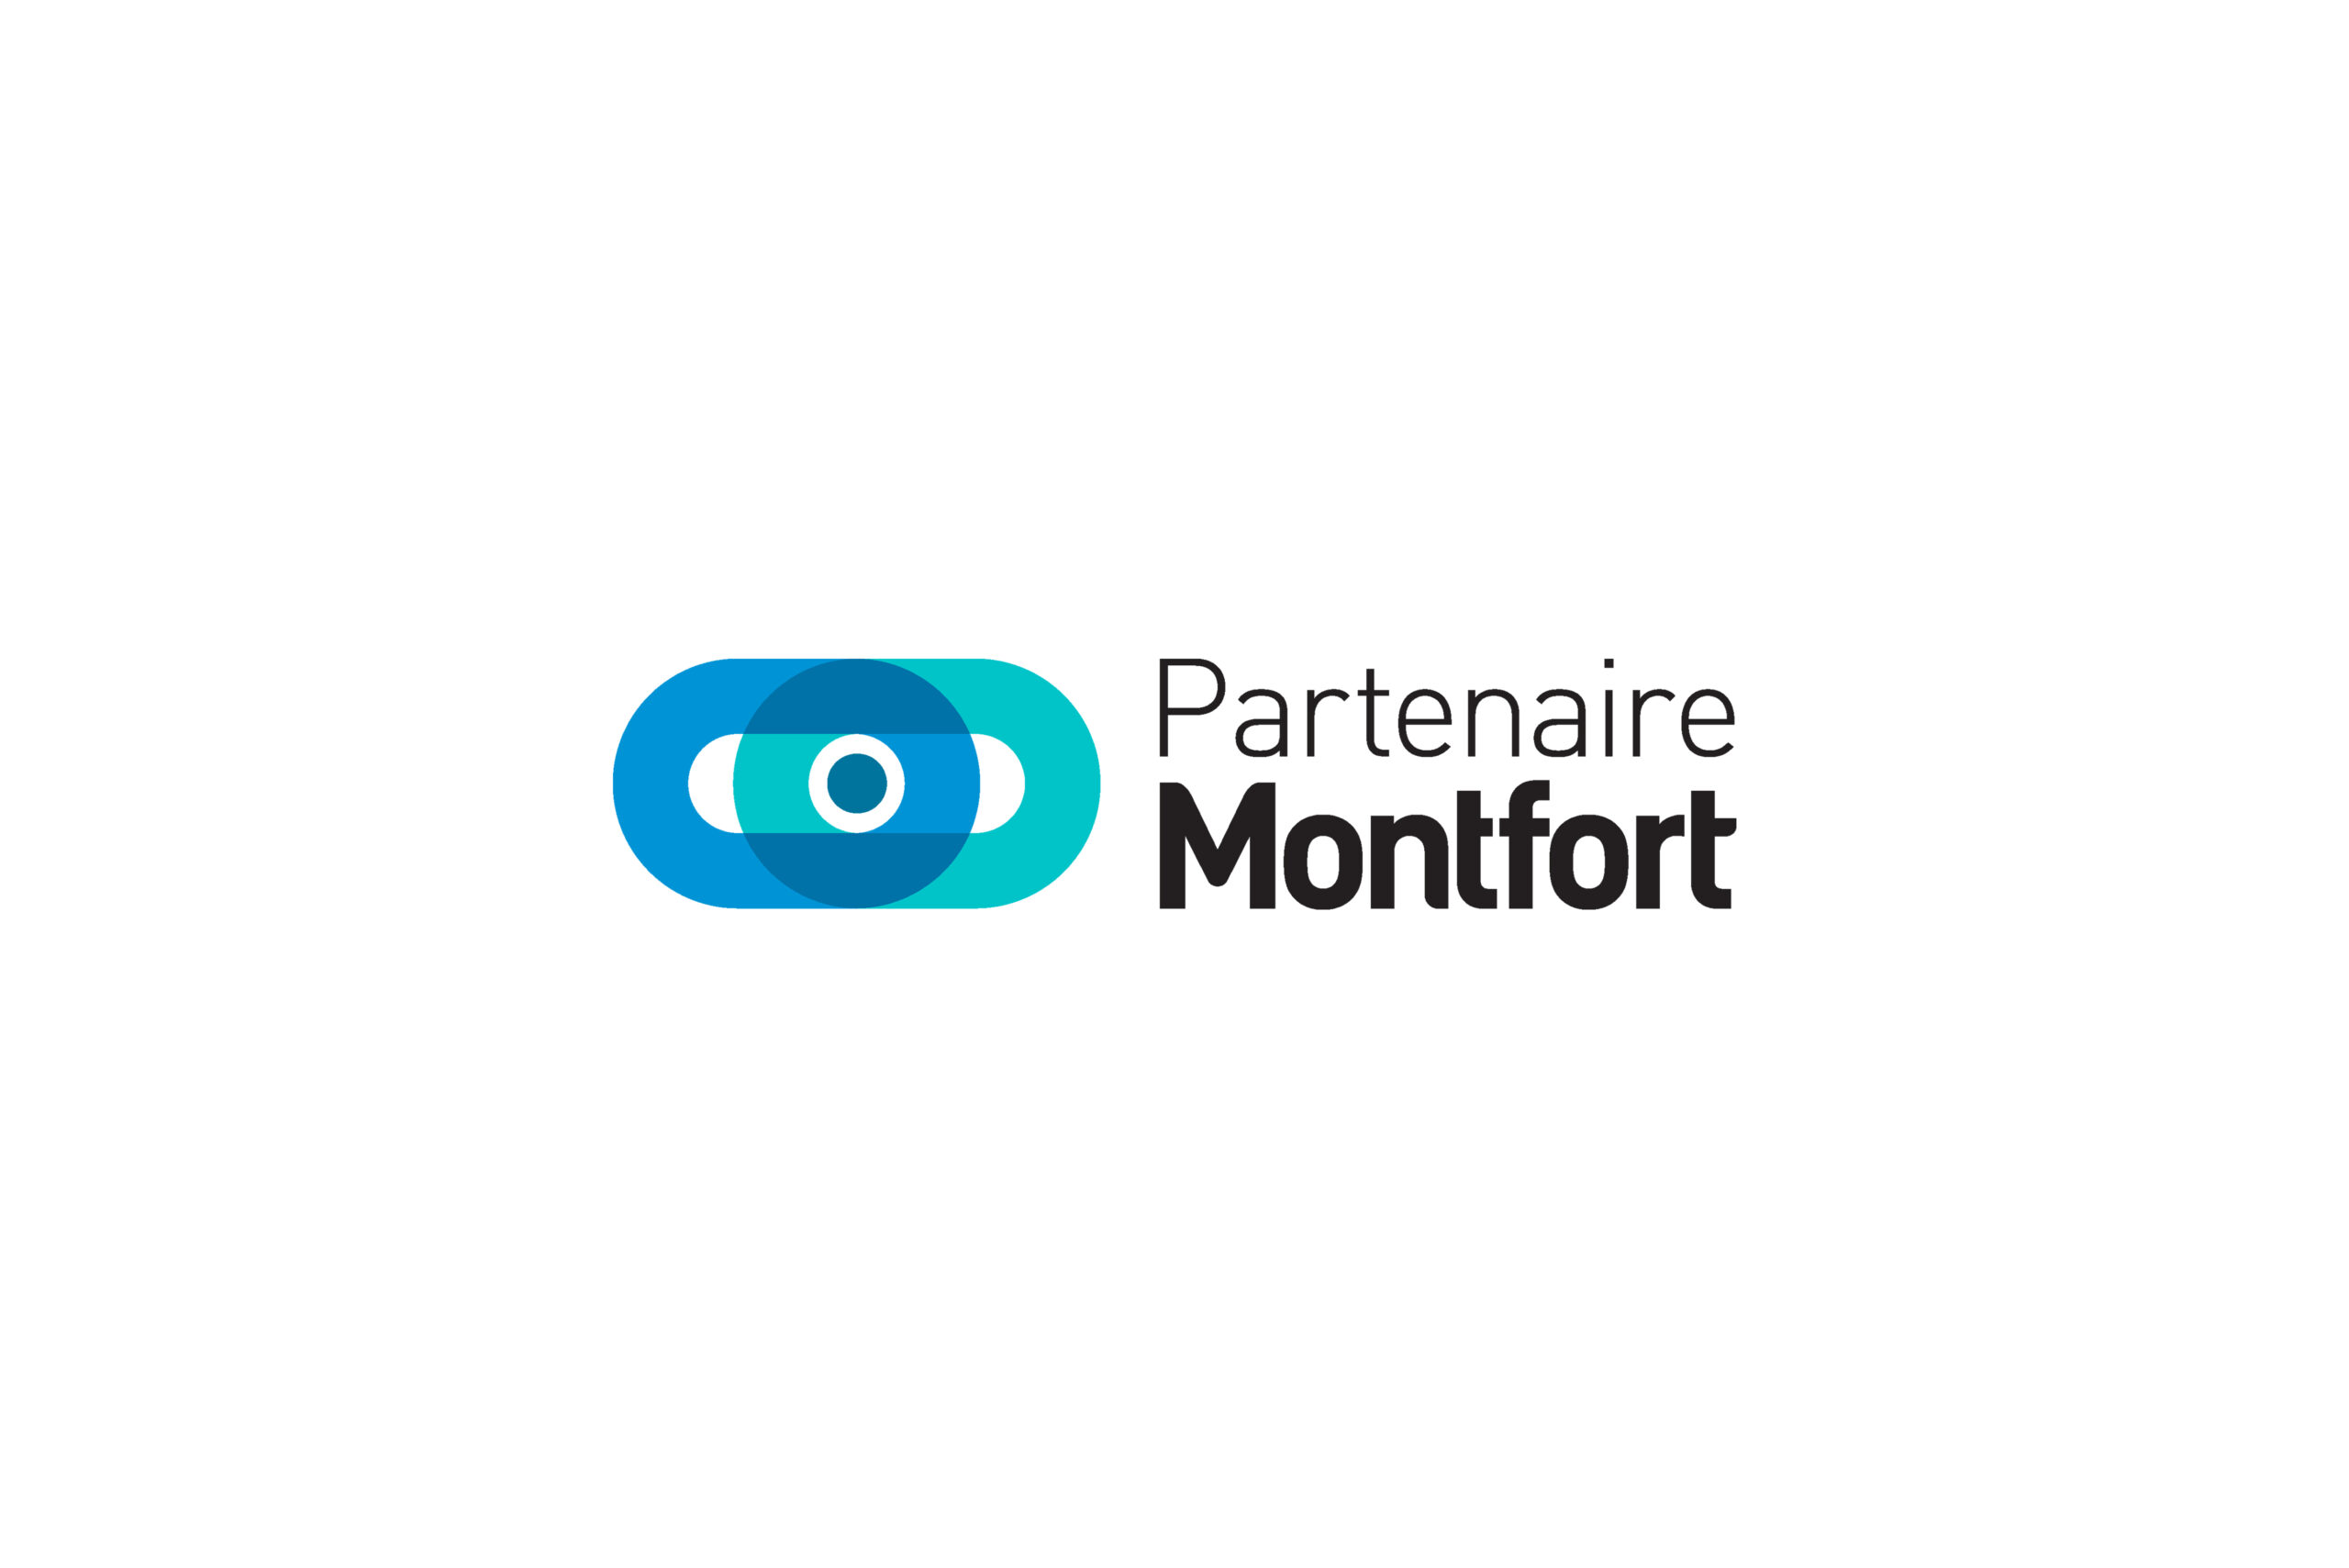 Partenaire Montfort Logo | Brand